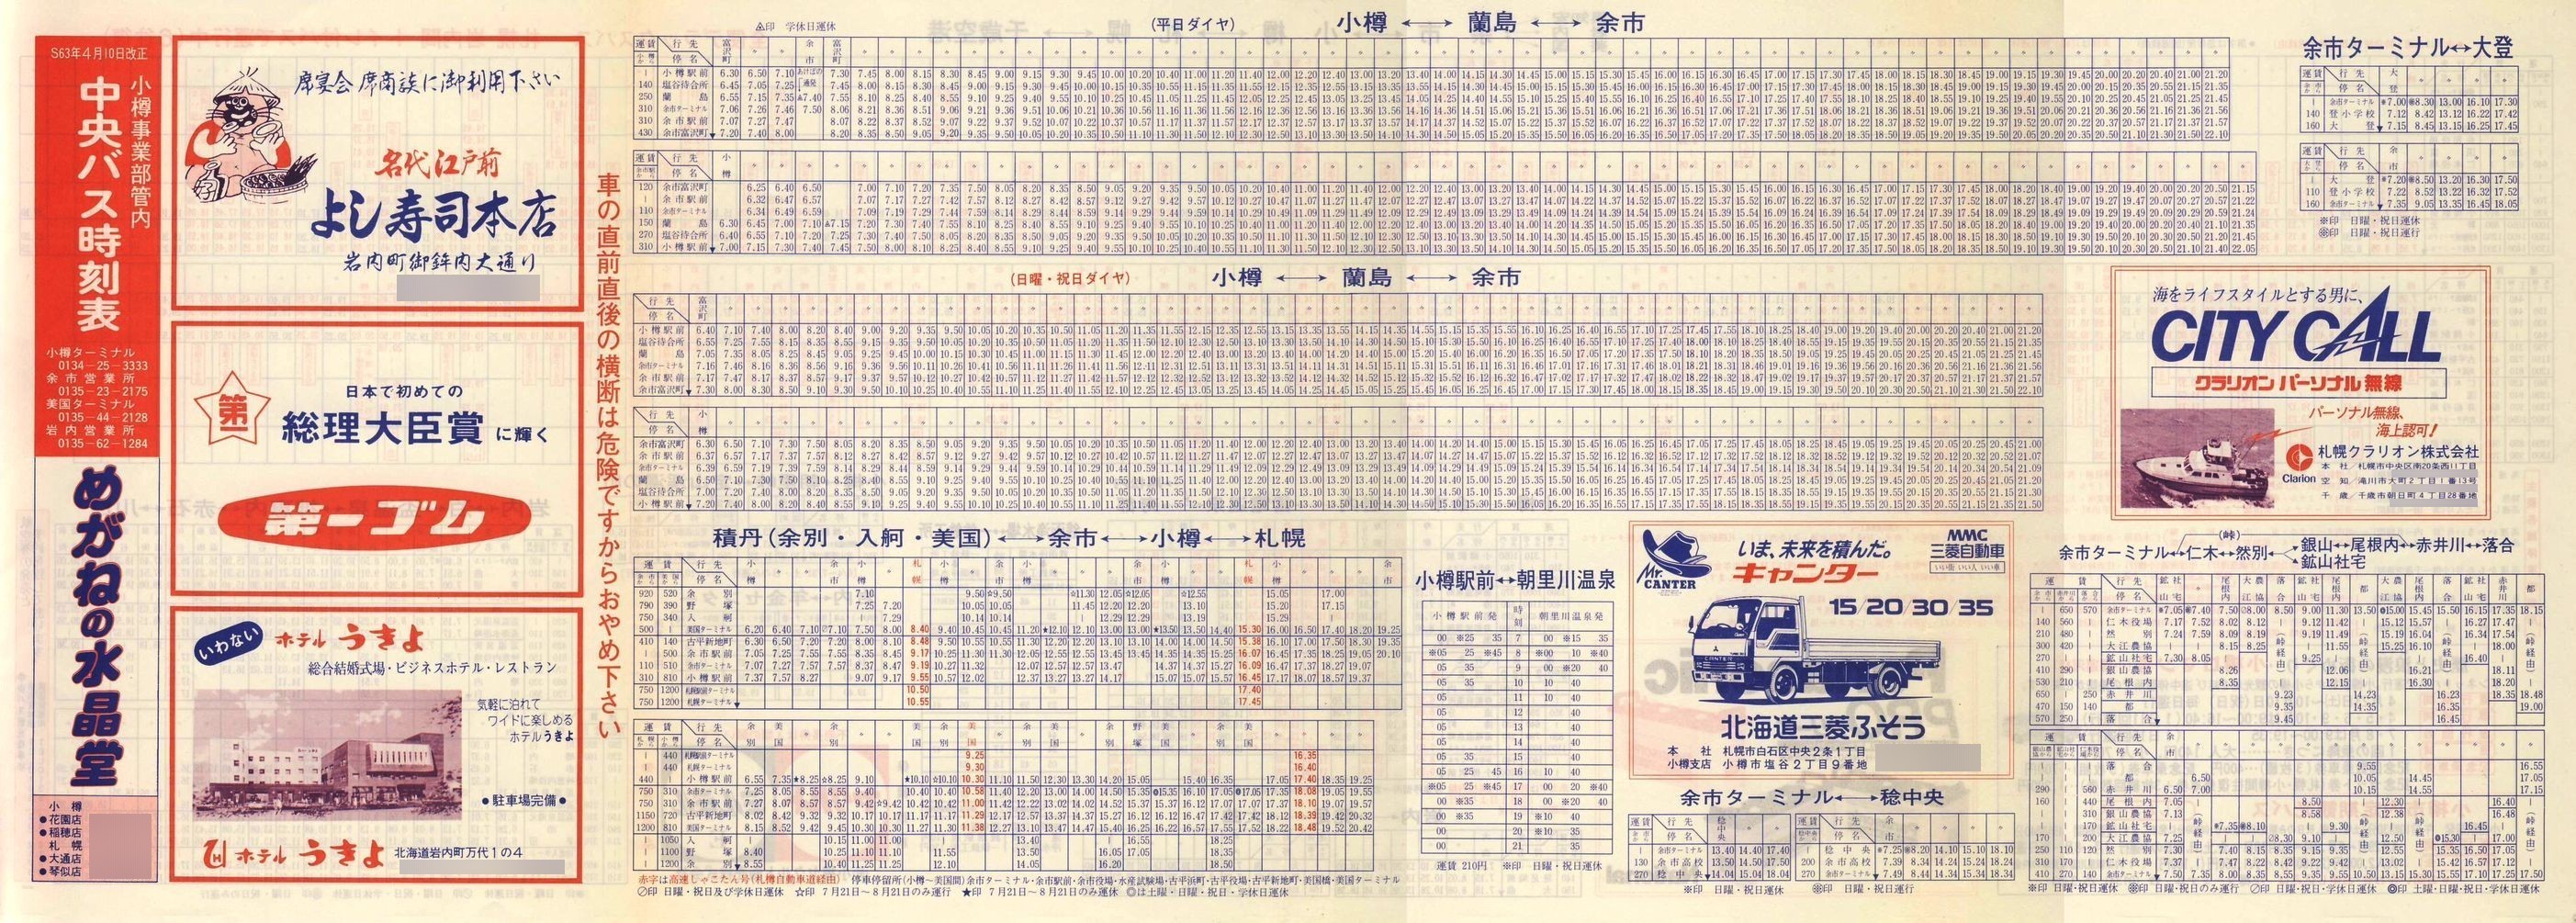 1988-04-10改正_北海道中央バス(小樽)_小樽事業部管内郊外線時刻表表面